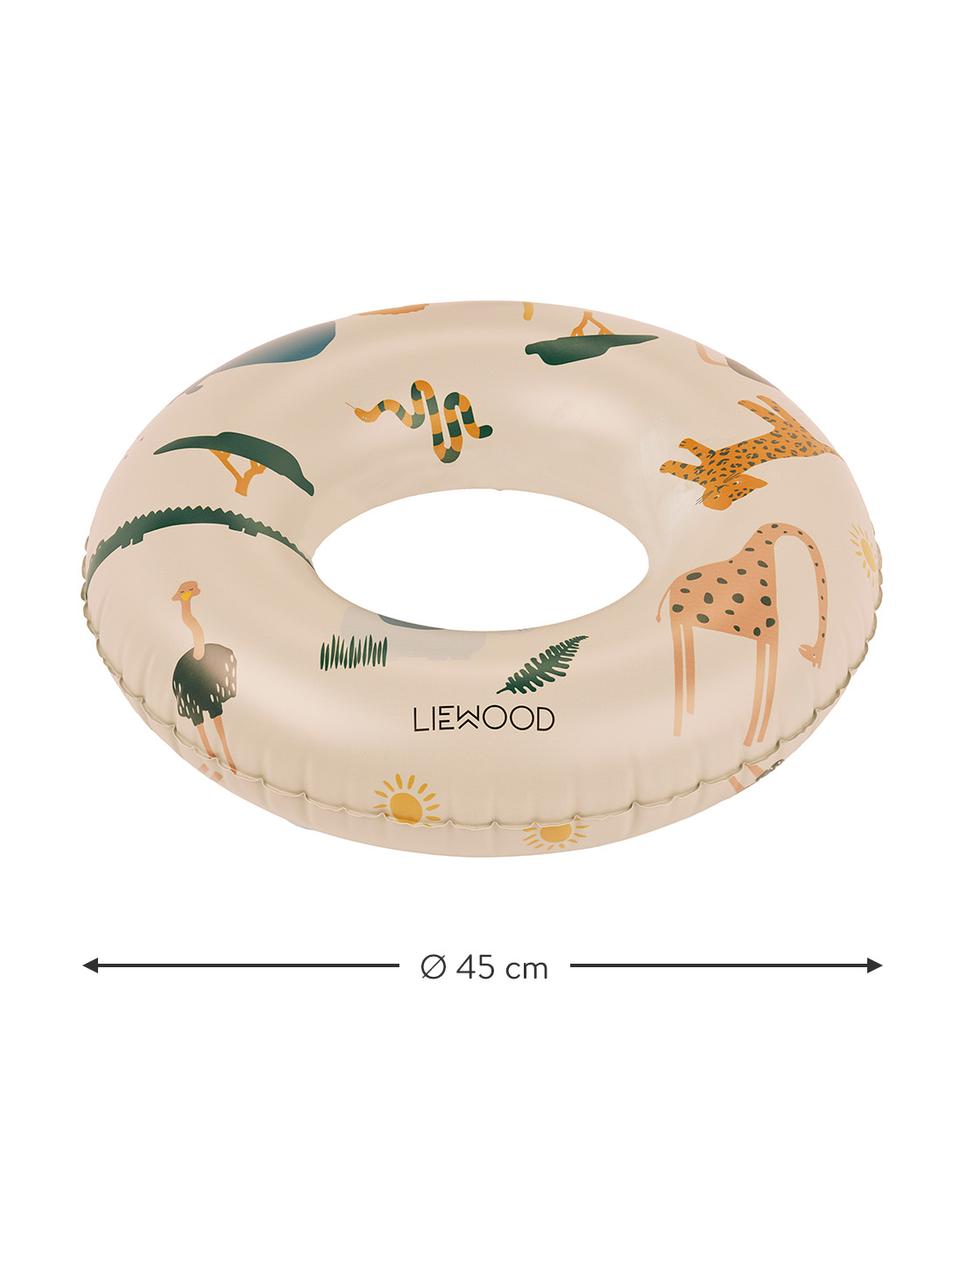 Anello da nuoto per bambini Baloo, 100% plastica (PVC), Beige, multicolore (motivo safari), Ø 45 cm